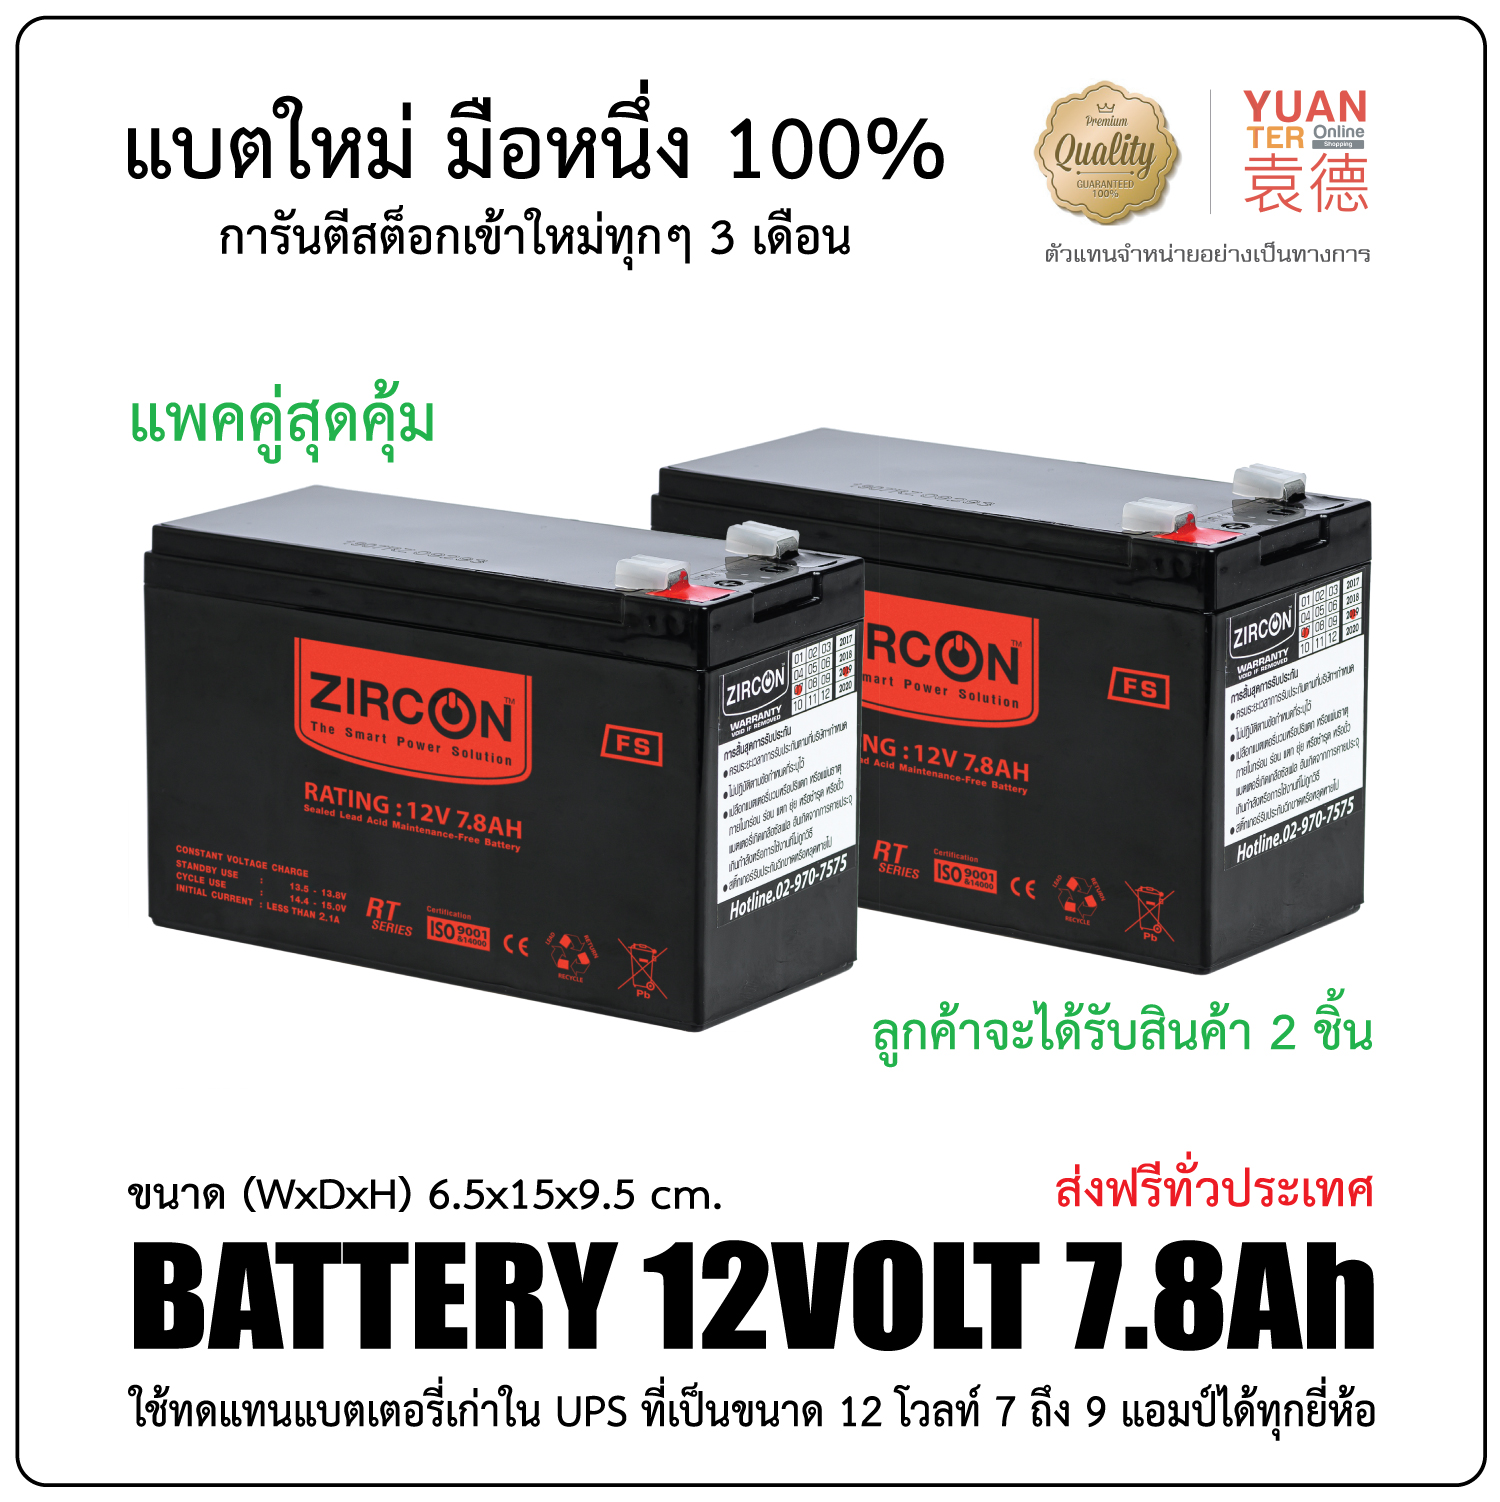 แพคคู่สุดคุ้ม!! แบตเตอรี่แห้ง Battery 12V7.8Ah ล็อตผลิตใหม่มือหนึ่ง100% ใช้ได้กับ UPS, ไฟฉุกเฉิน, ระบบเตือนภัย ที่ใช้แบตเดิมขนาด 12โวลท์ 7.0 - 9Ah มีกล่องต่อก้อน ส่งฟรีทั่วประเทศ